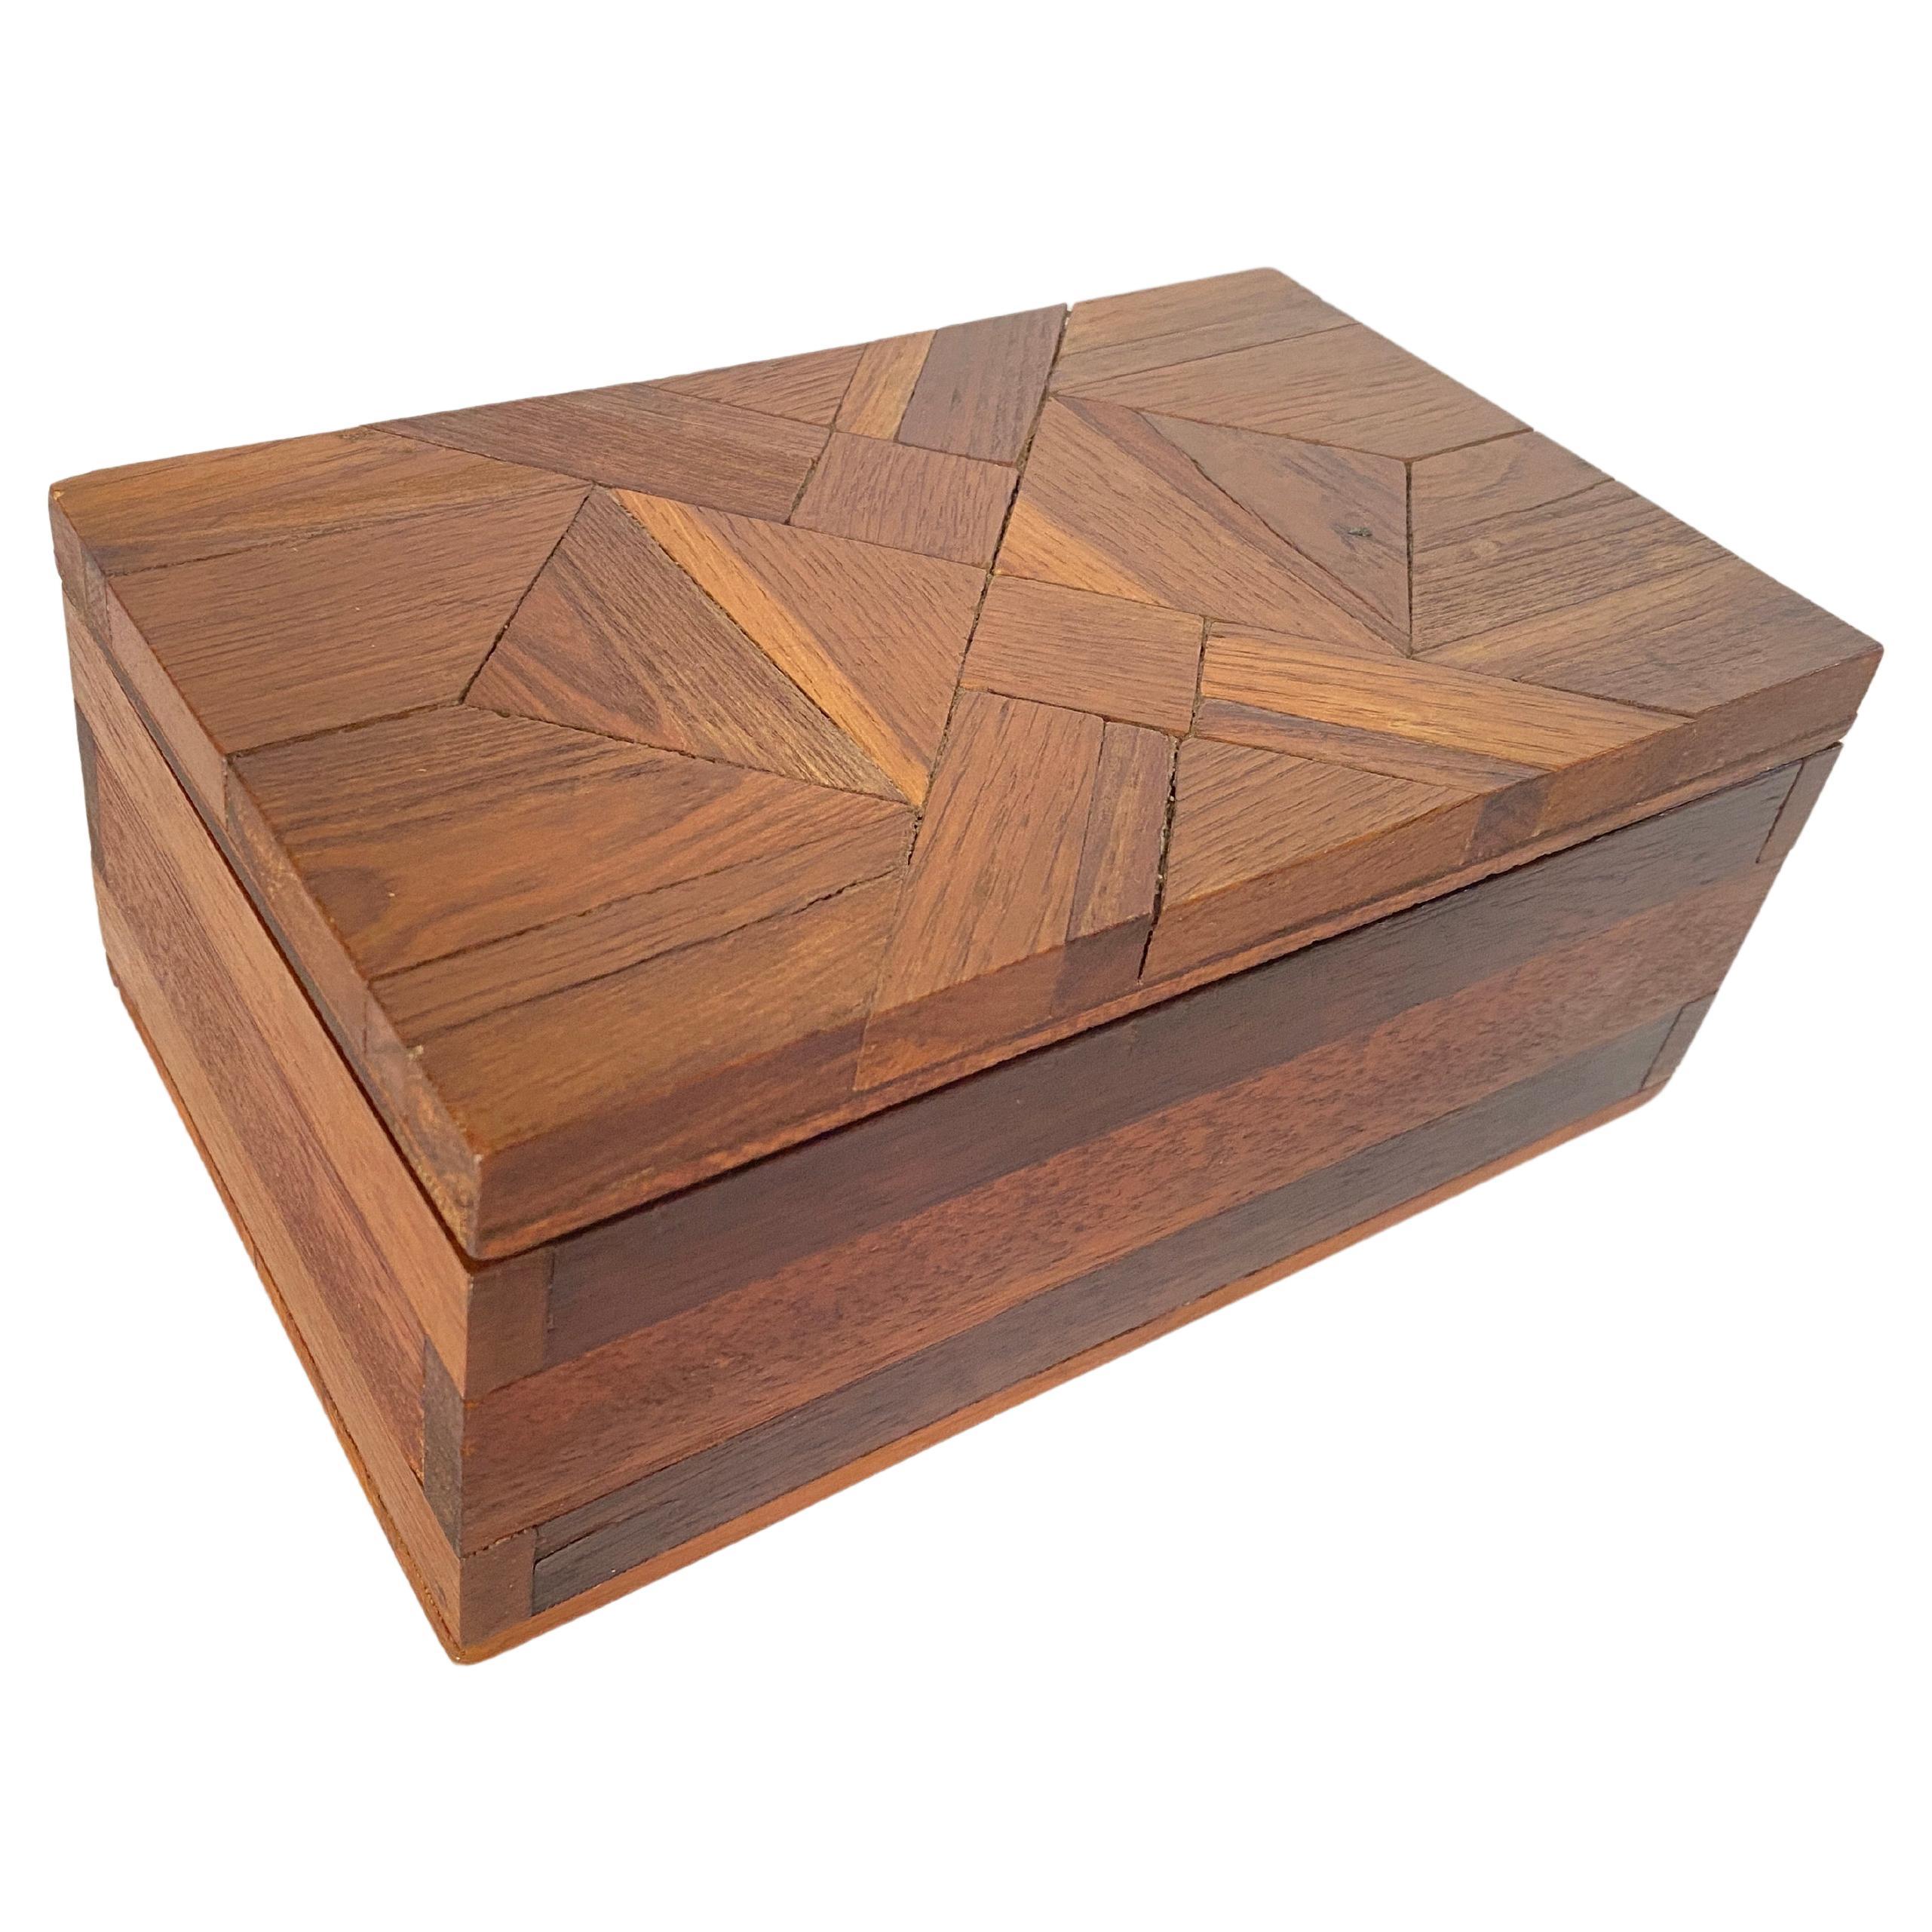 Dieses Kästchen ist ein Schmuckkästchen oder ein dekoratives Kästchen. Es wurde in den 1970er Jahren in Frankreich hergestellt. Der Deckel besteht aus einem schachbrettartigen Rechteck aus Holz. Die Farbe ist braun.
